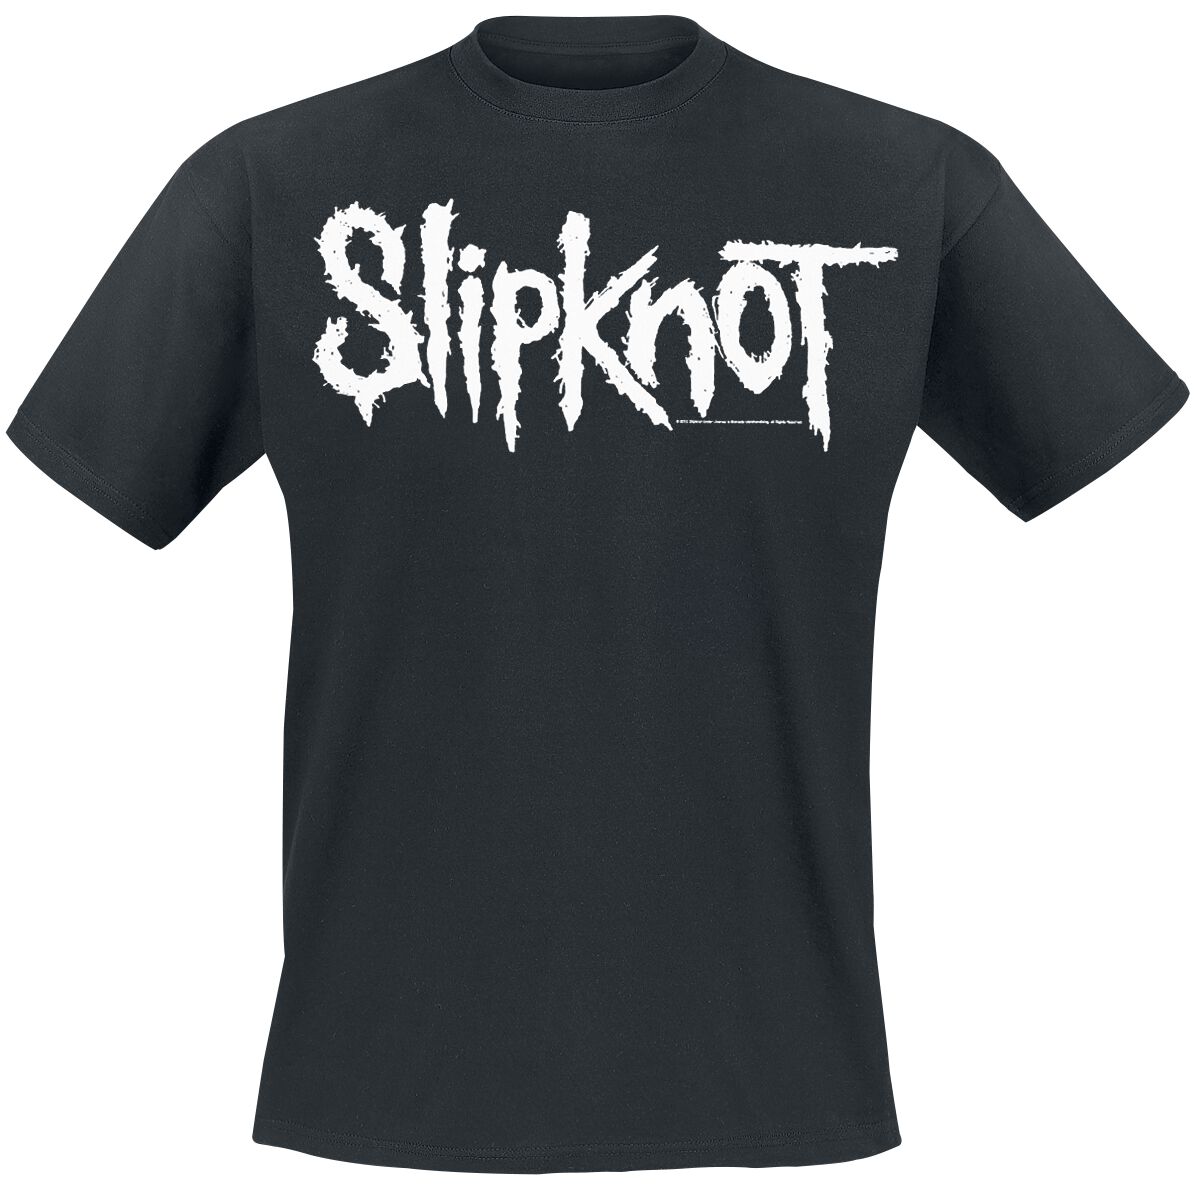 Slipknot T-Shirt - White Logo - S bis 5XL - für Männer - Größe S - schwarz  - EMP exklusives Merchandise!